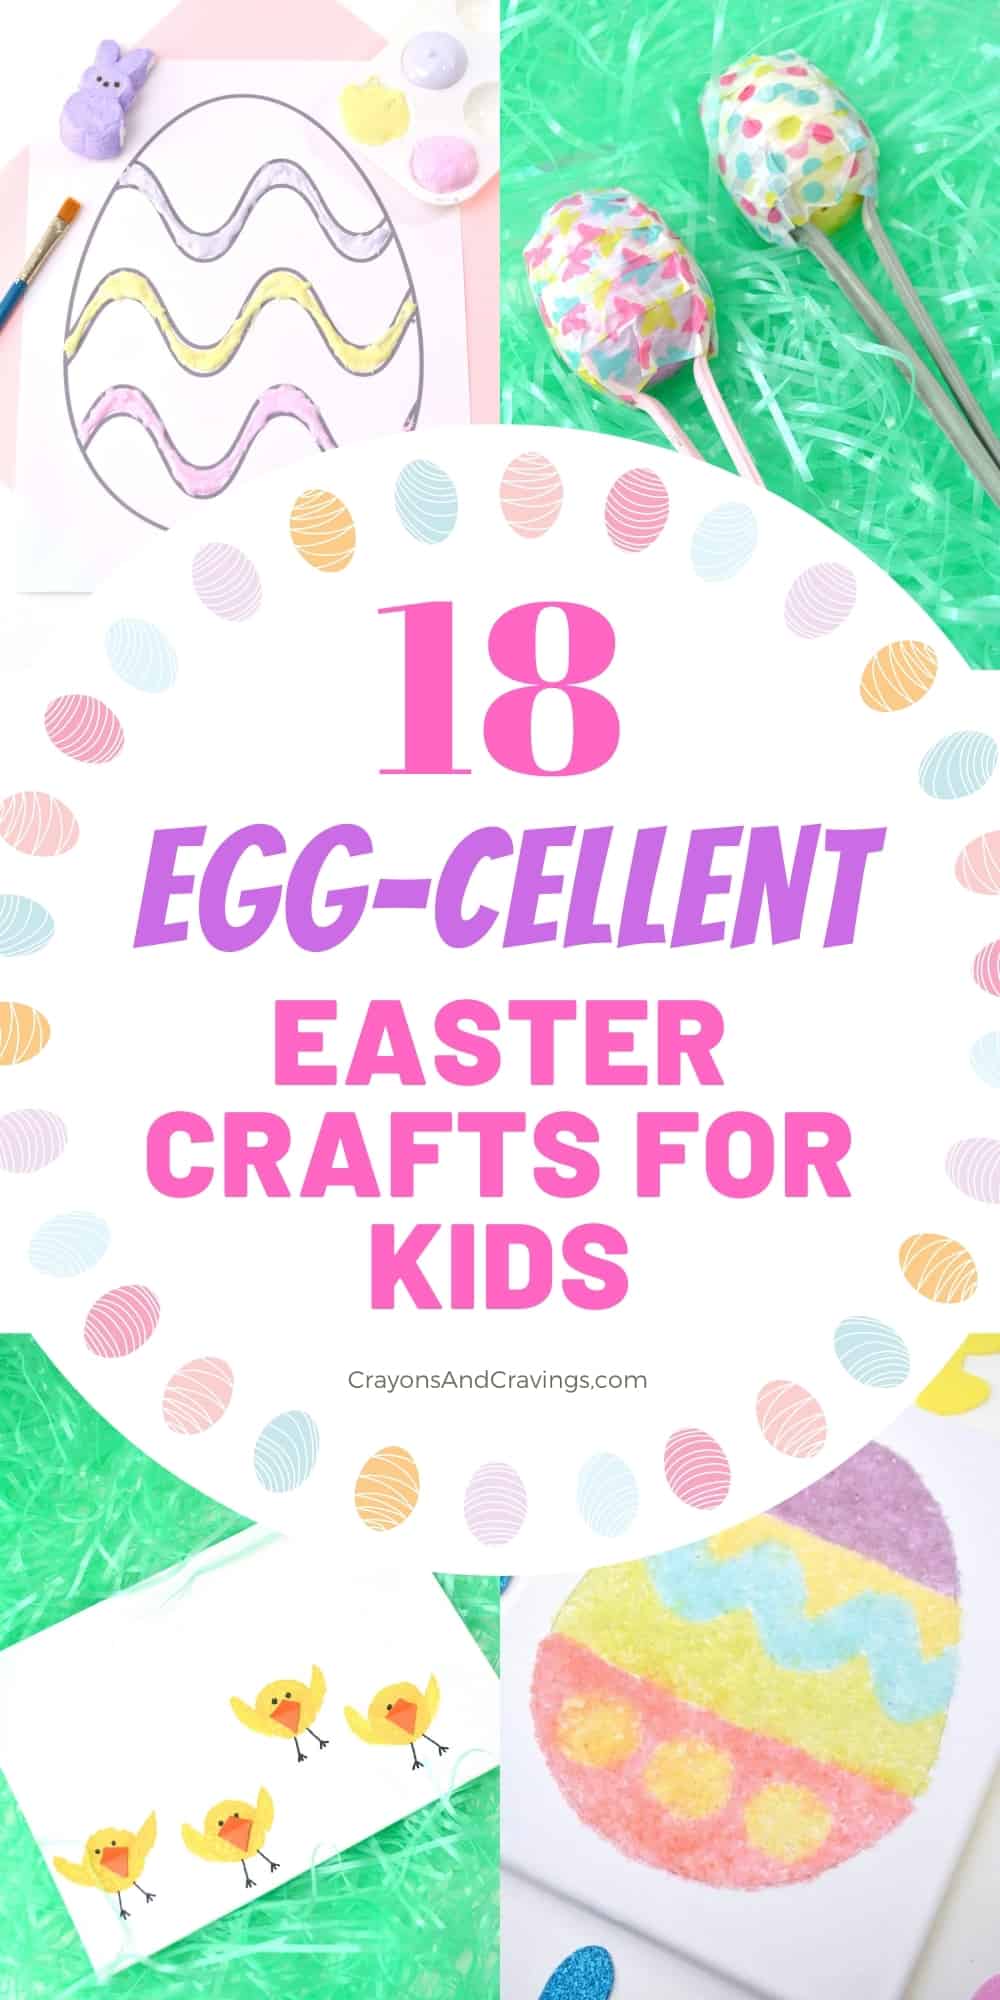 18 Egg-Cellent Easter Crafts for Kids